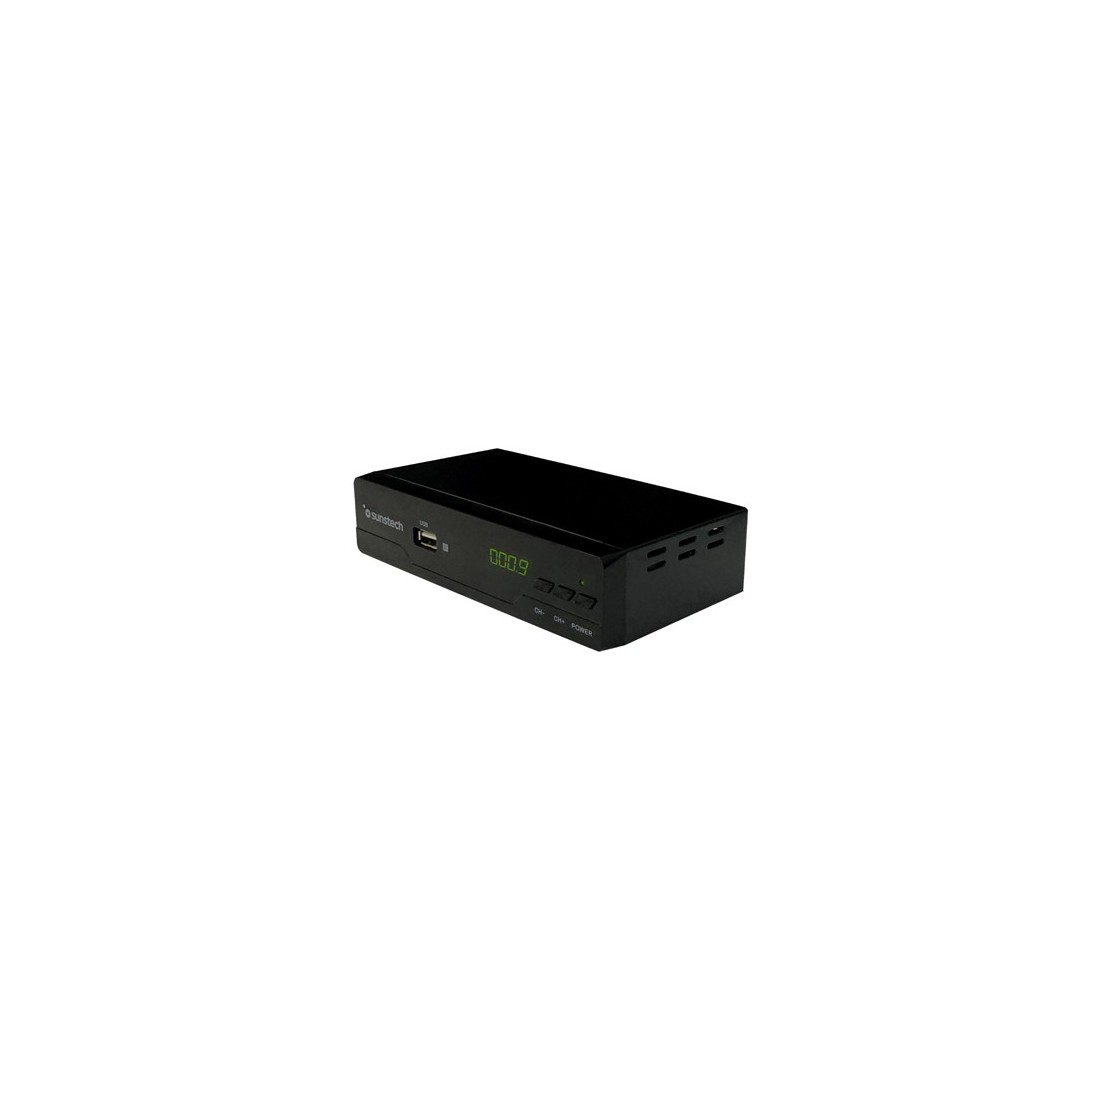 Sintonizador TDT HD Sunstech DTB200HD2 - TDT - Los mejores precios